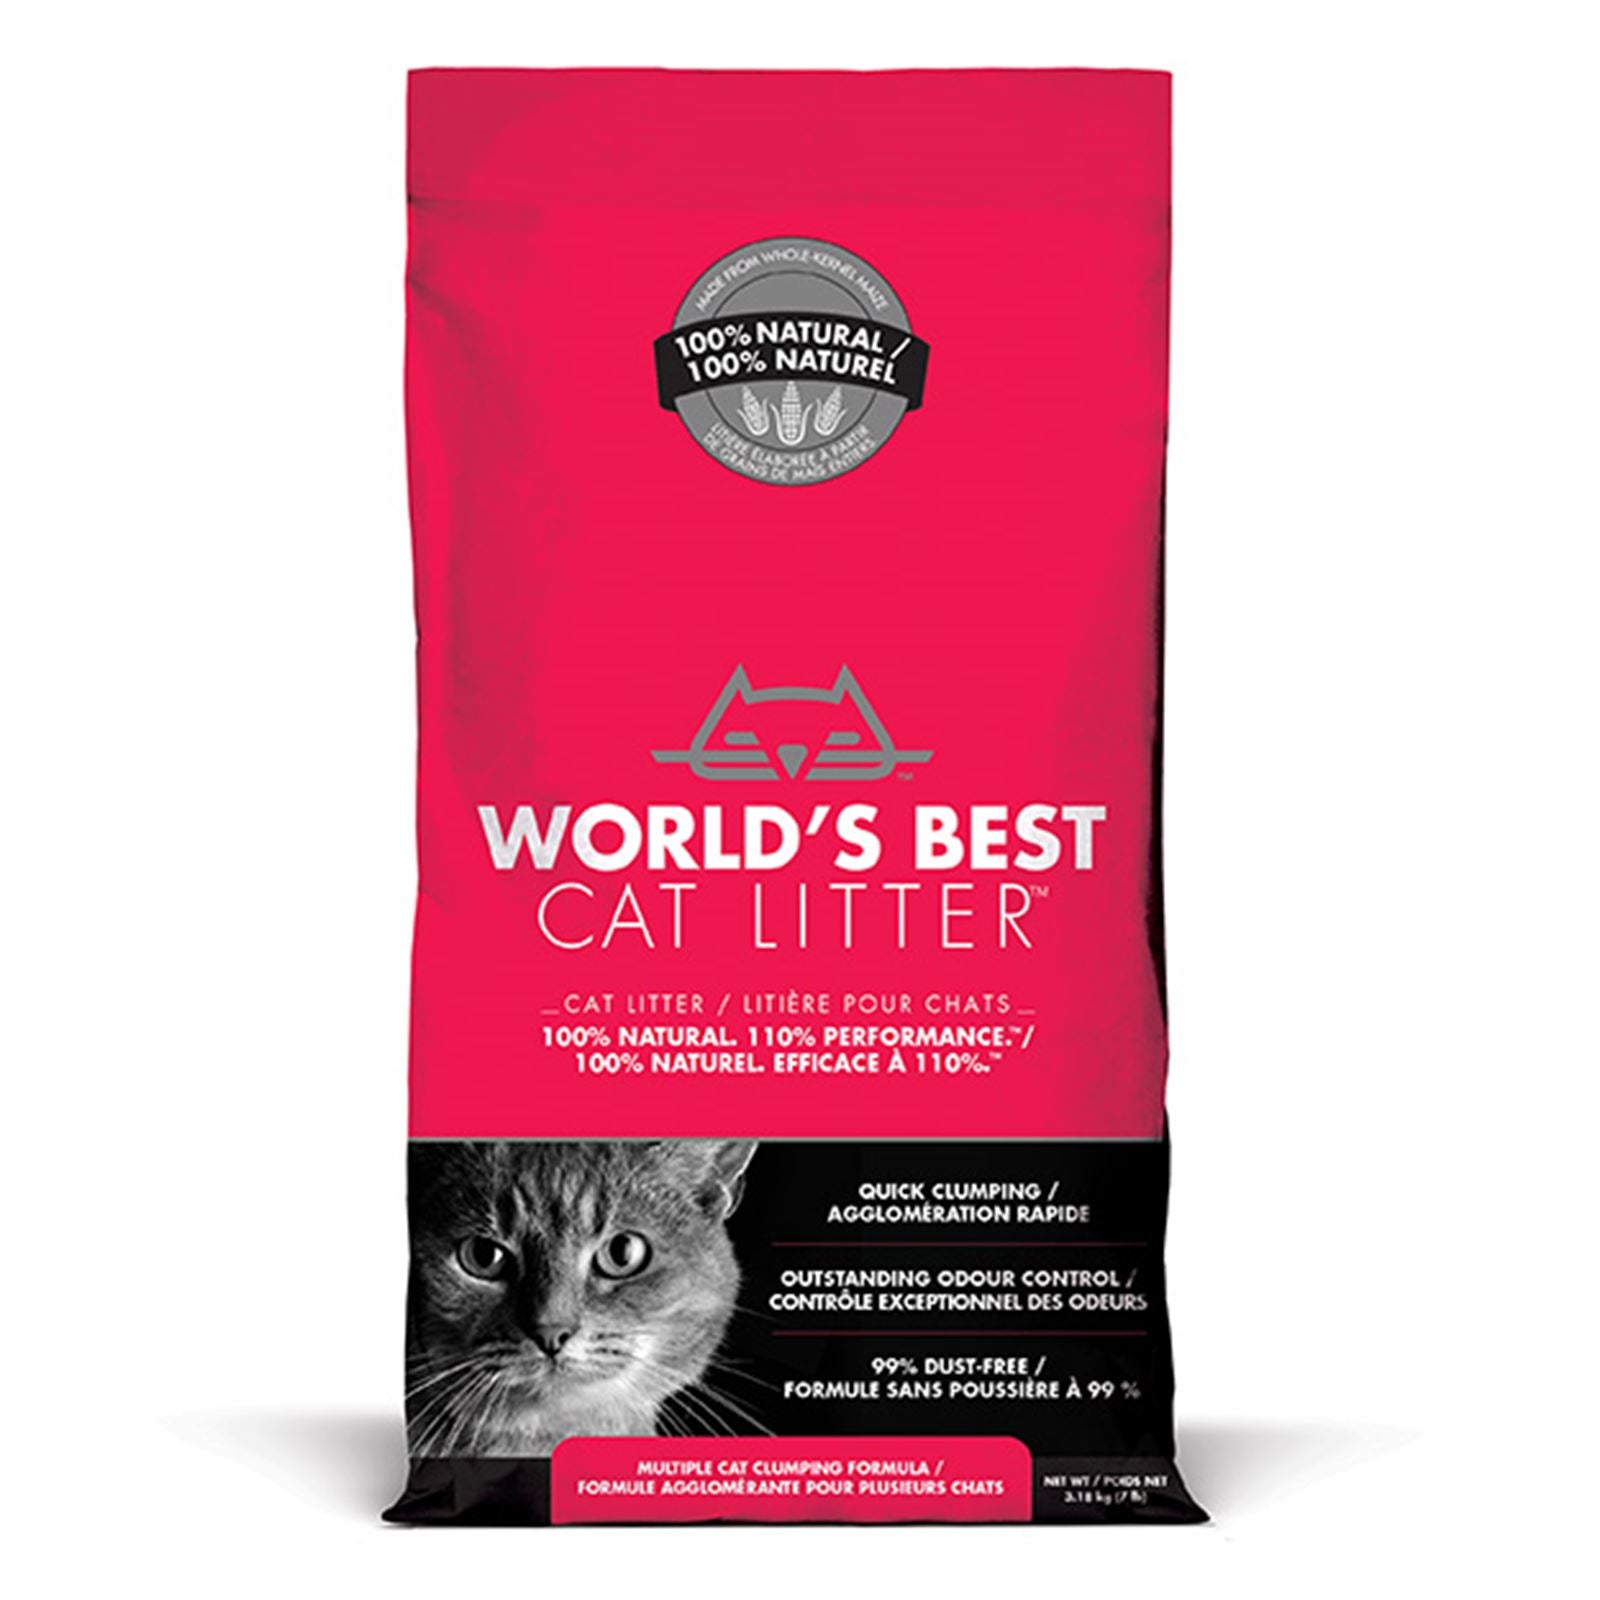 World's Best Cat Litter - Multi Cat (6928188801185)